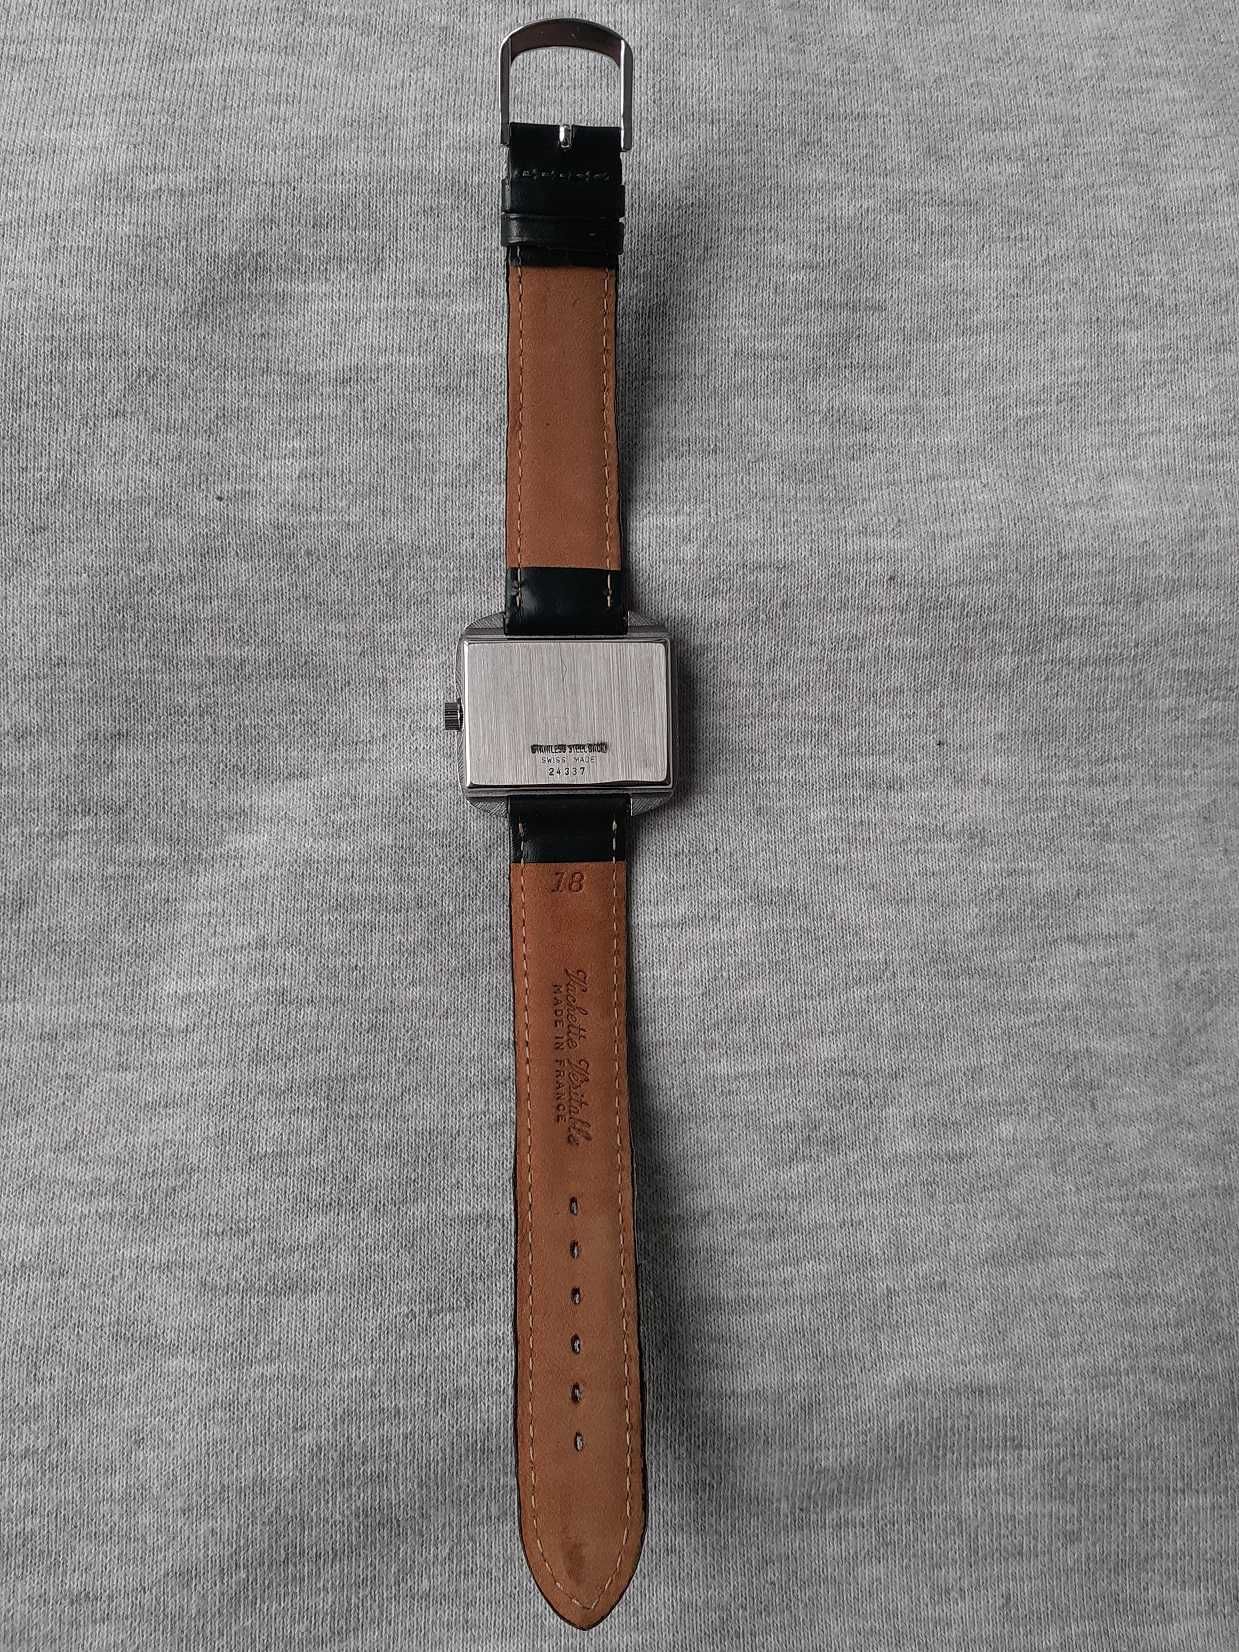 Relógio Lanco vintage